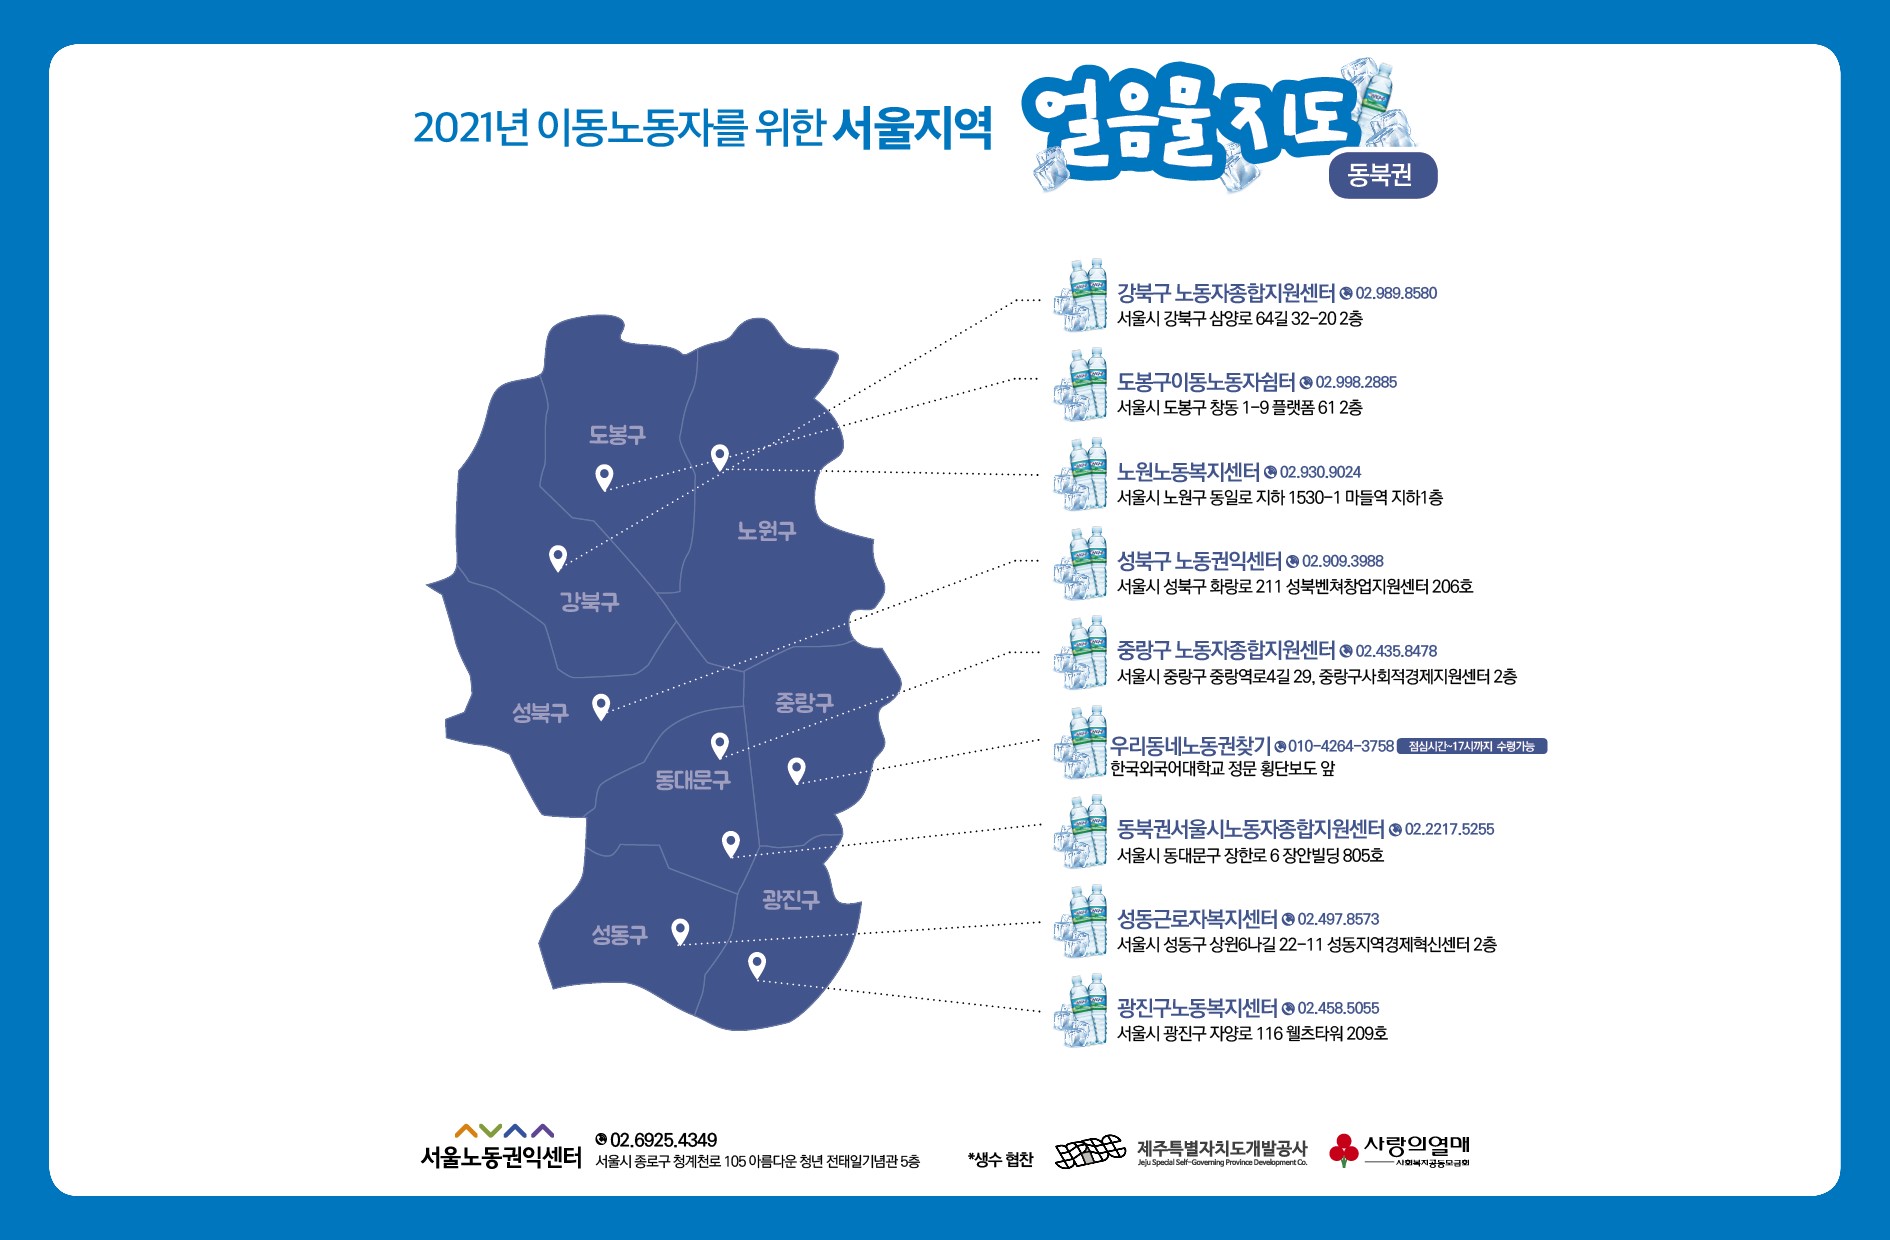 2021_얼음물지도_동북권.jpg 관련 이미지